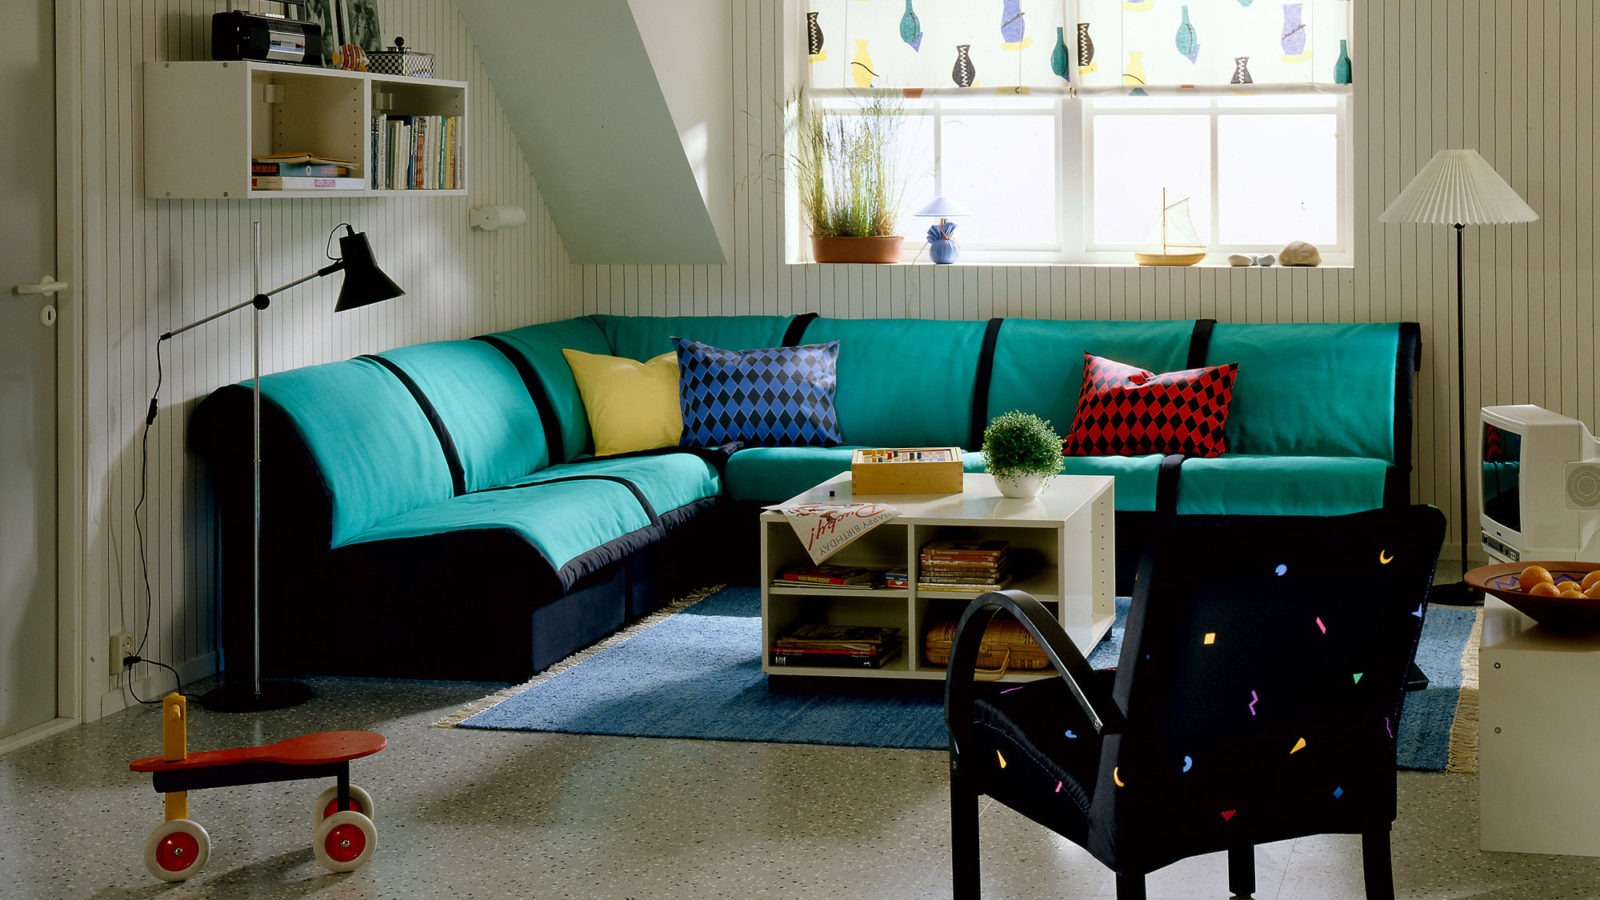 Habitación con sofá modular blanco y negro, modelo LEXBY, como sofá de esquina. Tejidos en estampados coloridos.